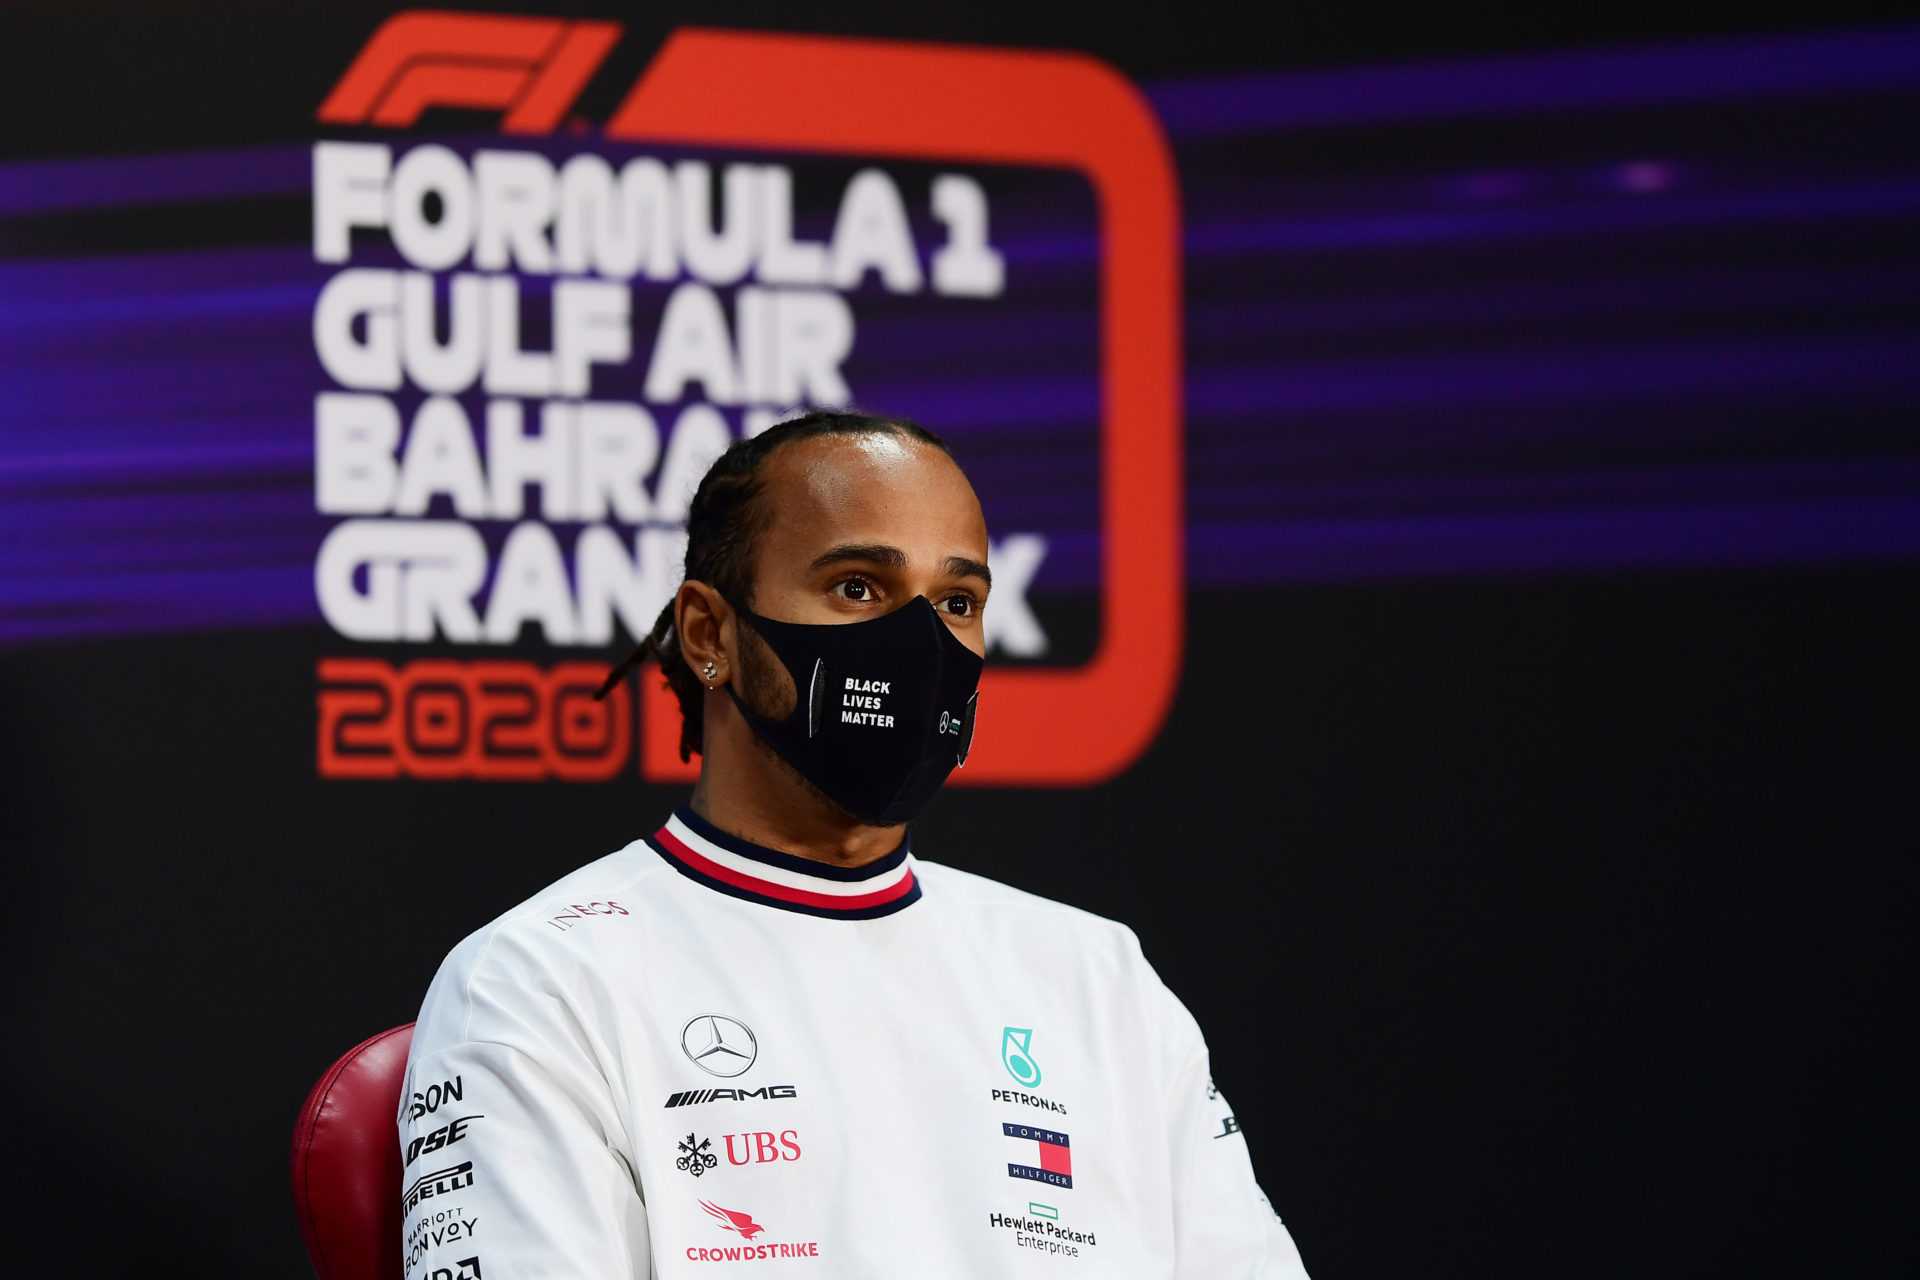 REGARDER: Lewis Hamilton oublie complètement le patron de l'équipe de F1 dans un moment gênant lors de la conférence de presse